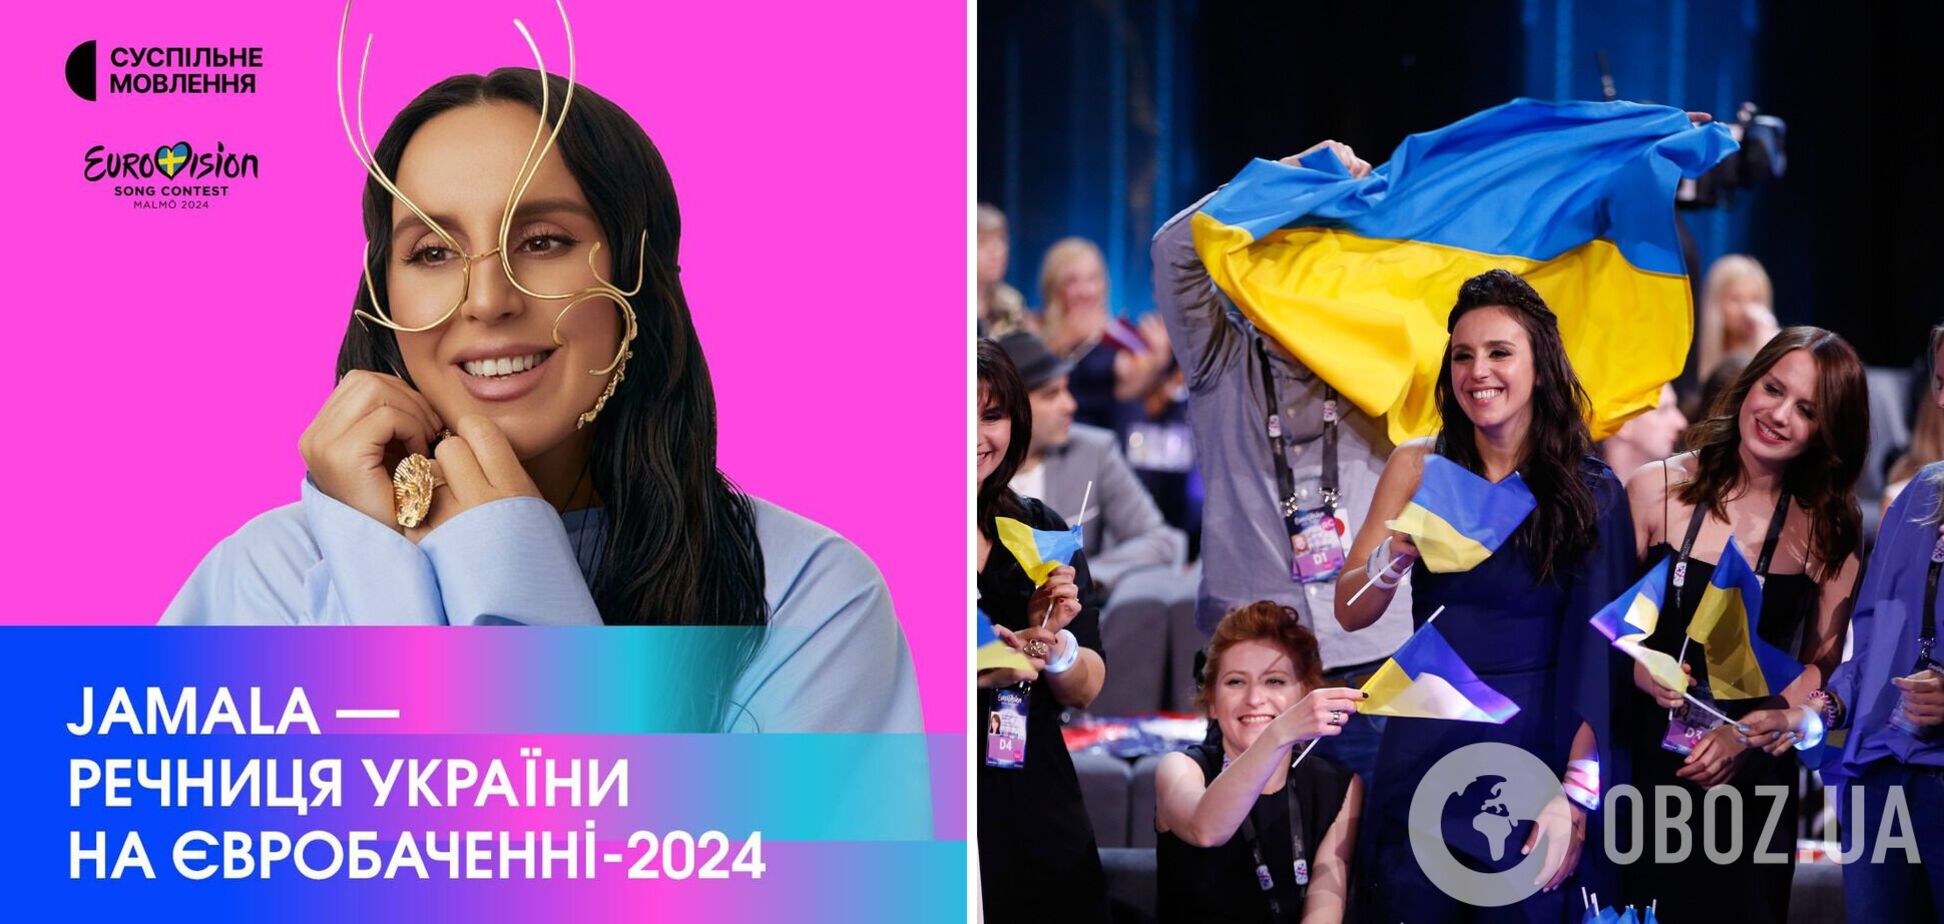 Джамала стане речницею України на Євробаченні 2024: співачка оголосить бали Національного журі в гранд-фіналі